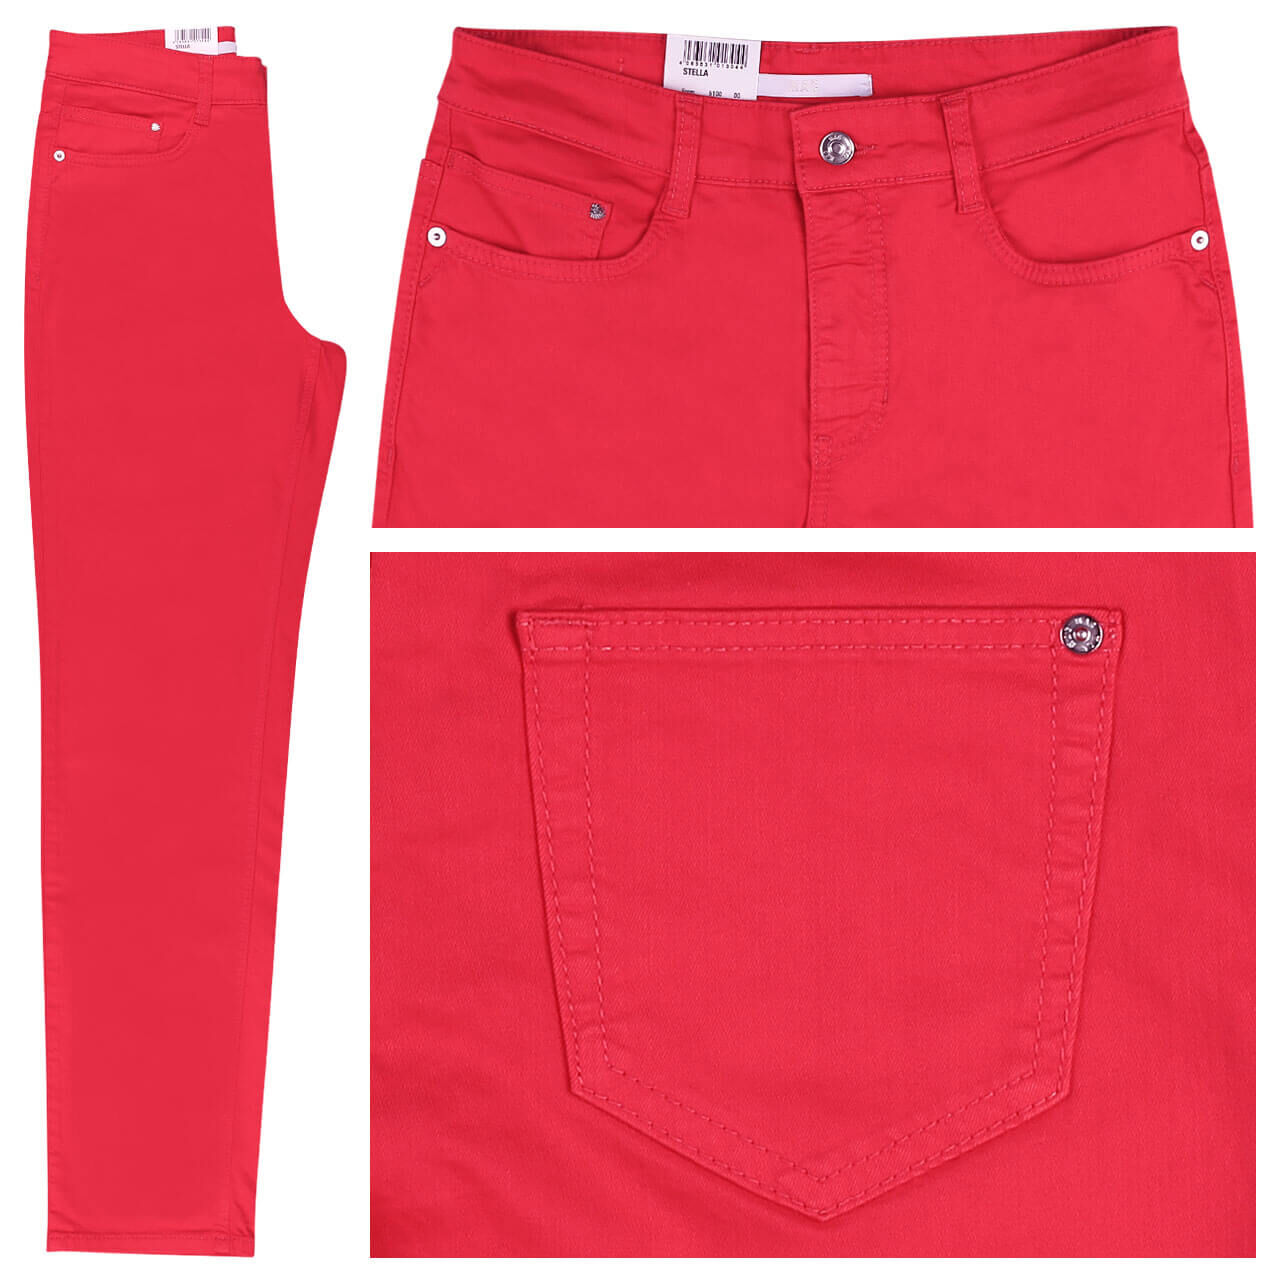 MAC Jeans Stella für Damen in Rot, FarbNr.: 895R